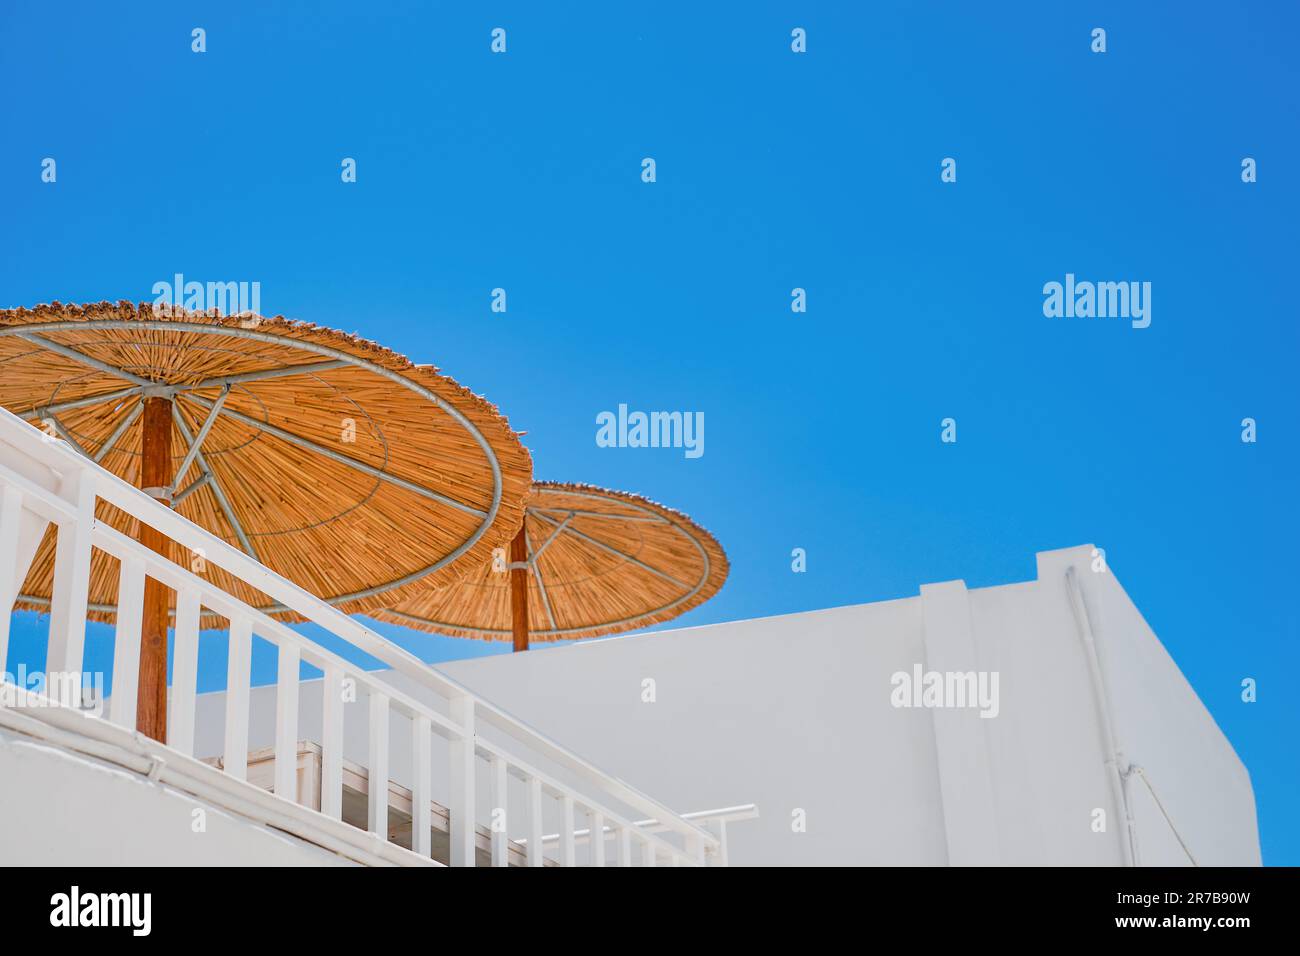 Sonnenschirme auf dem Dach des Hauses vor dem blauen Himmel, die griechische Straße im Einkaufszentrum Lindos, die Insel Rhodos, die griechischen Inseln Th Stockfoto